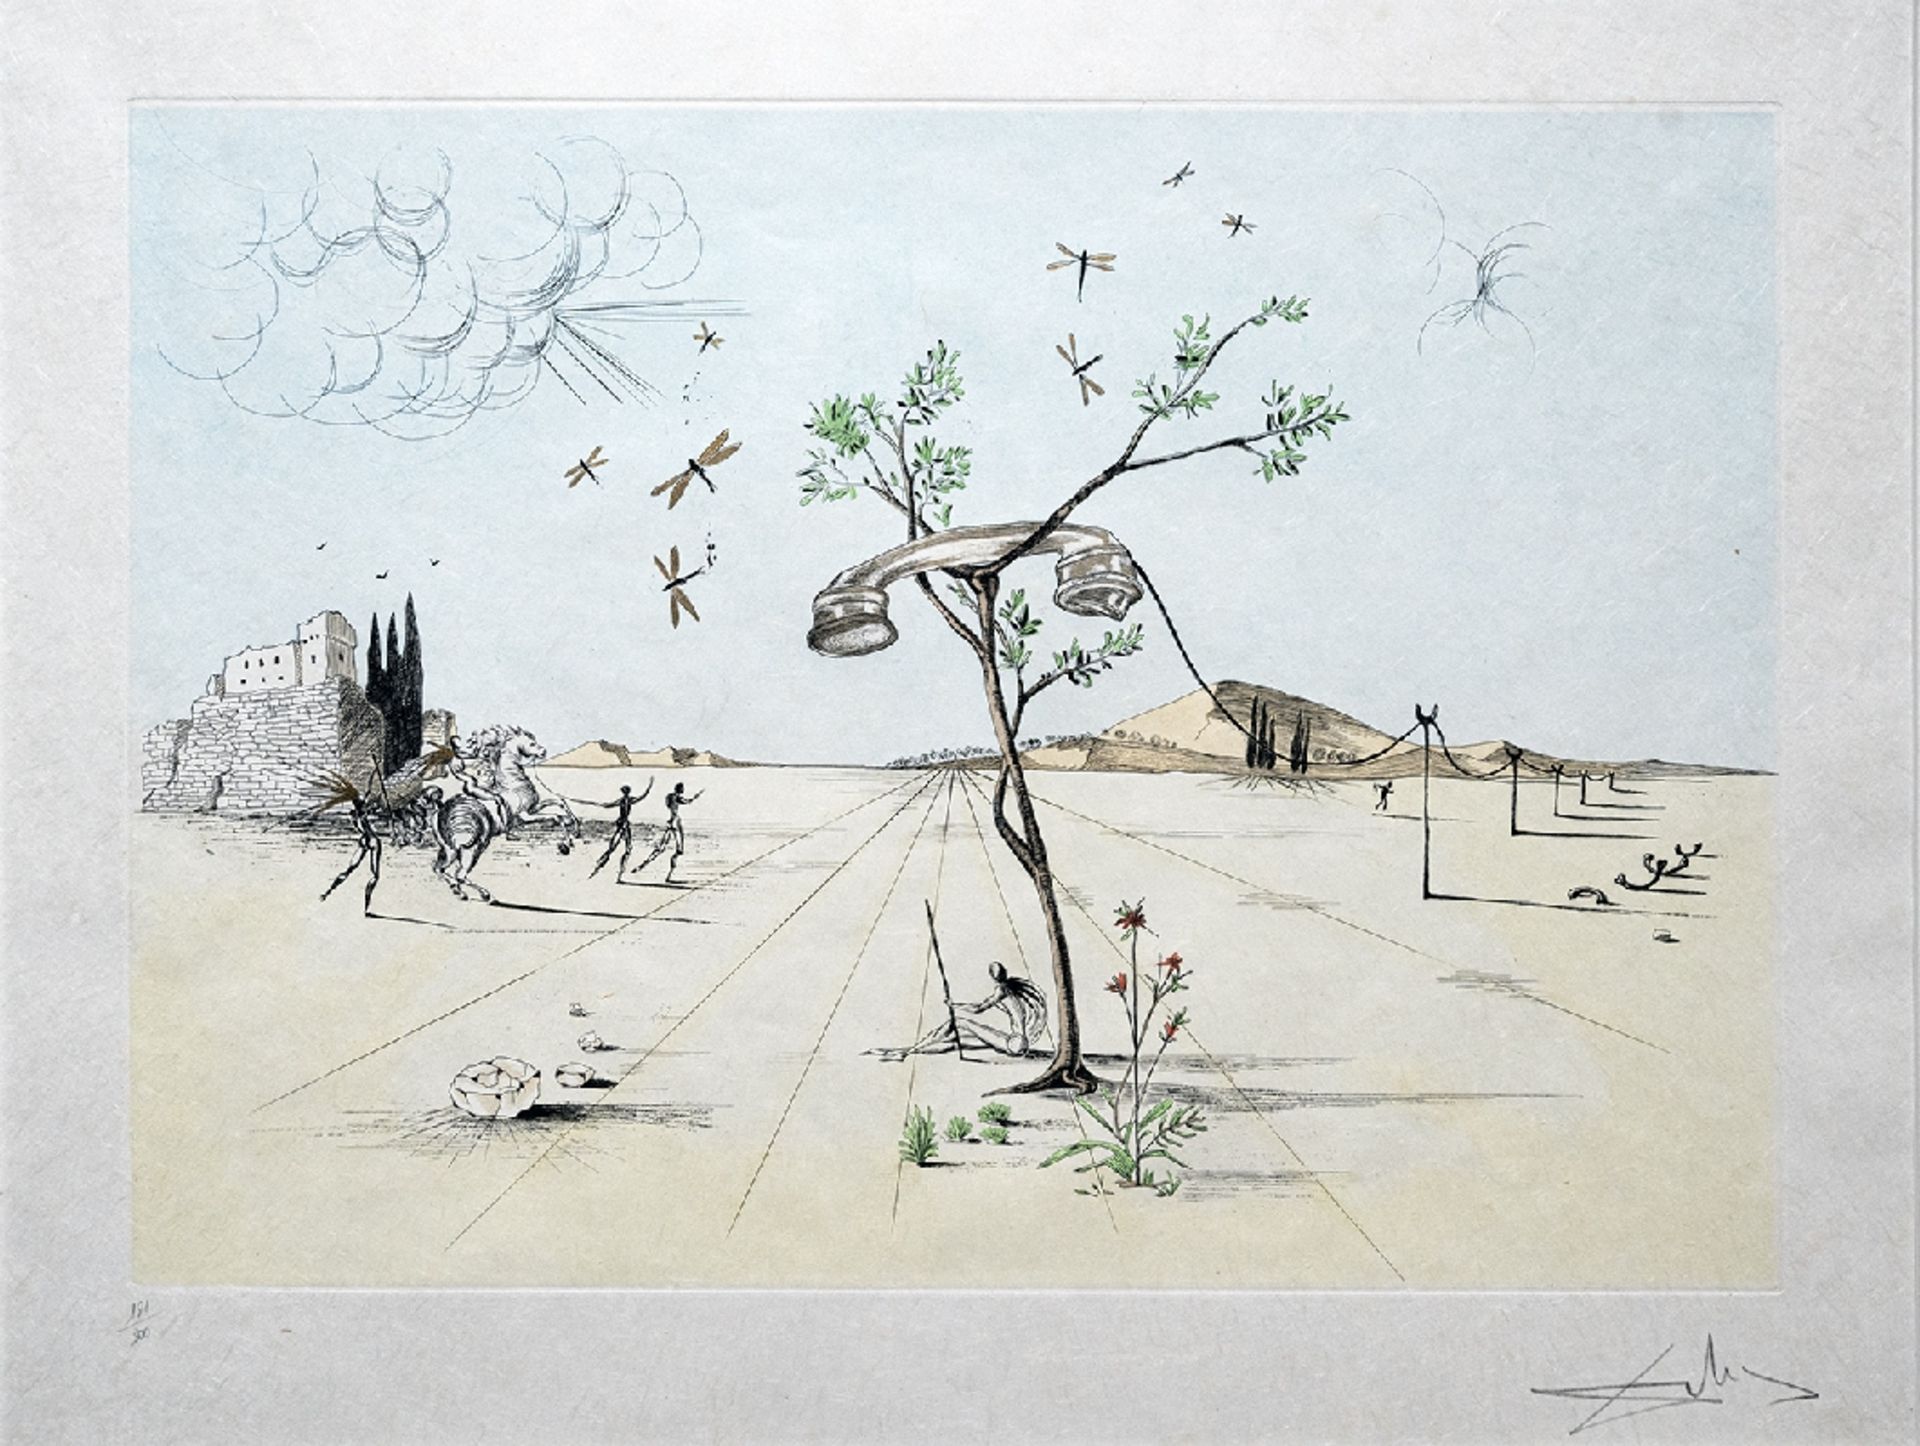 Dalí - Körperloses Telefon in Wüste